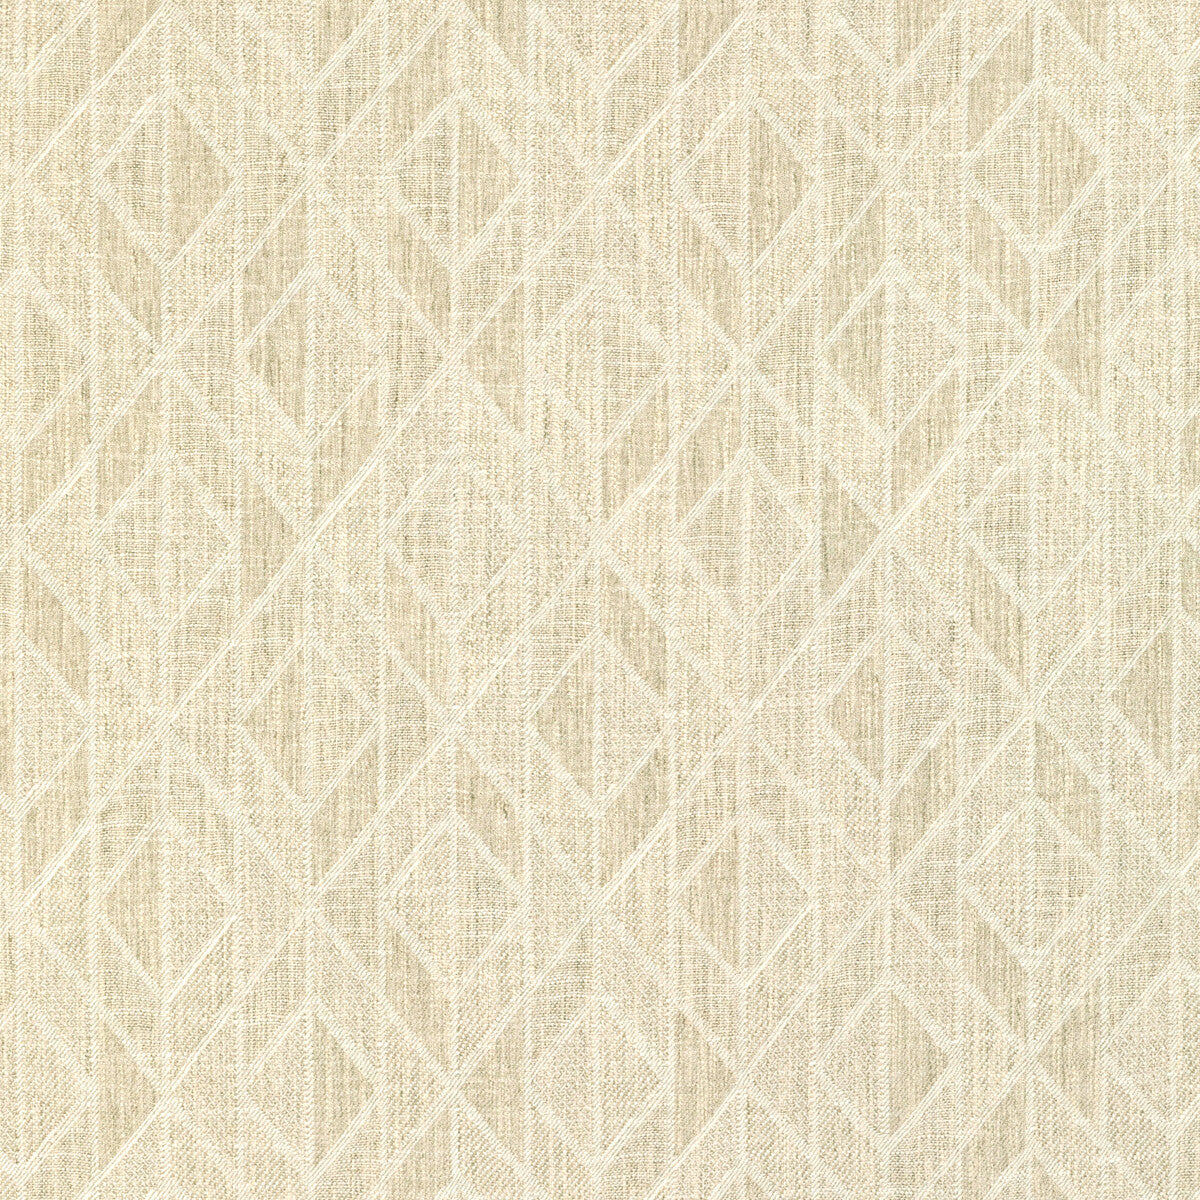 Kravet Design fabric in 36285-101 color - pattern 36285.101.0 - by Kravet Design